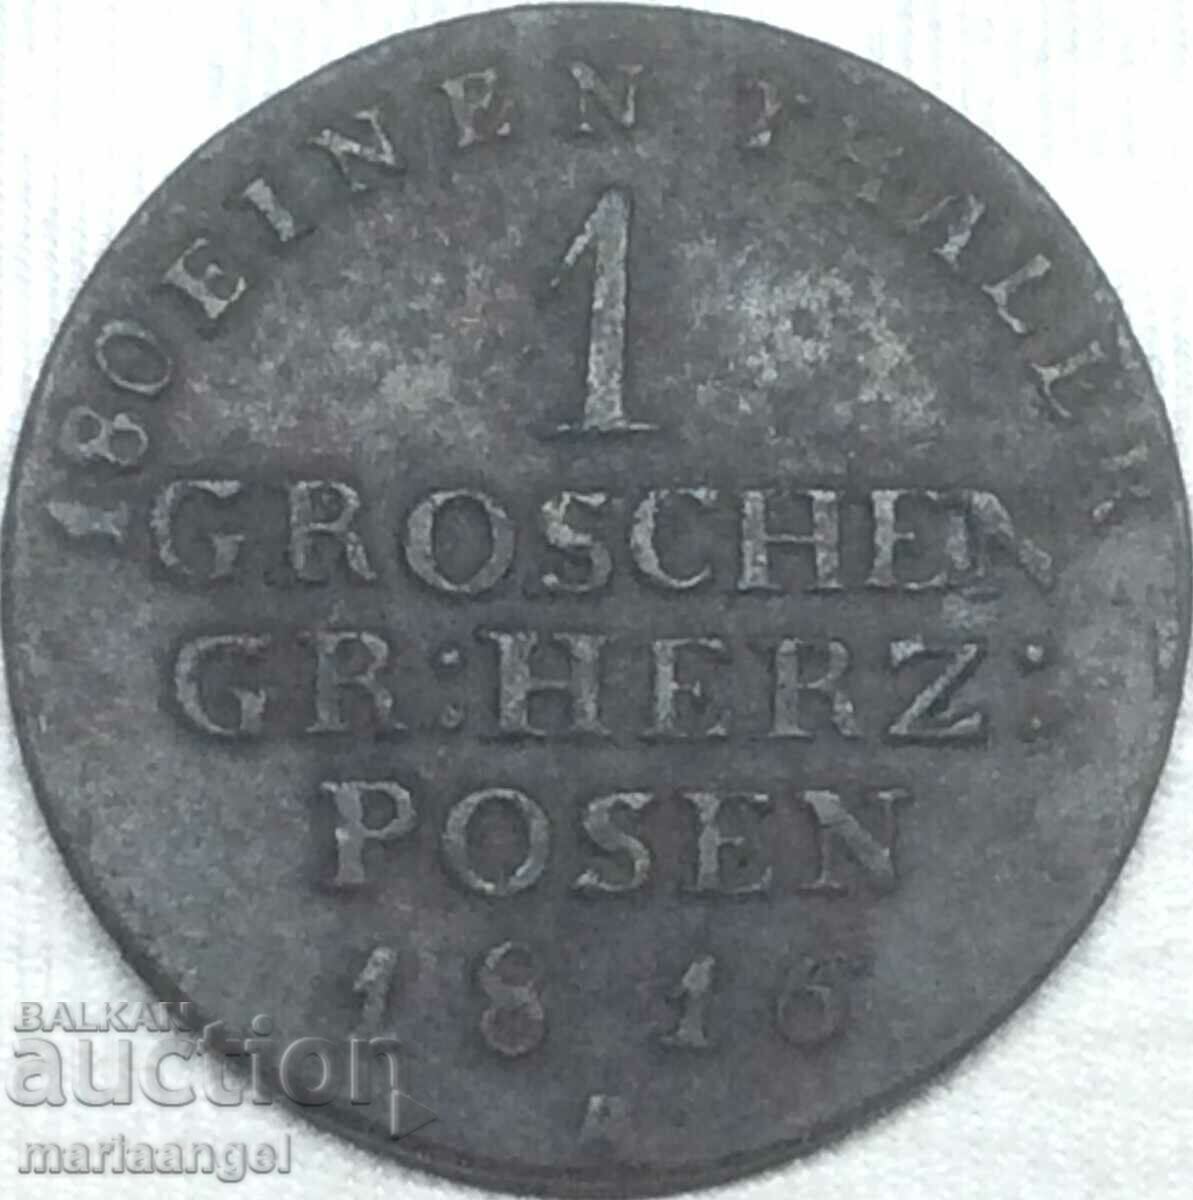 Prusia la Poznan 1 Grosz 1816 Statele Germane - destul de rar